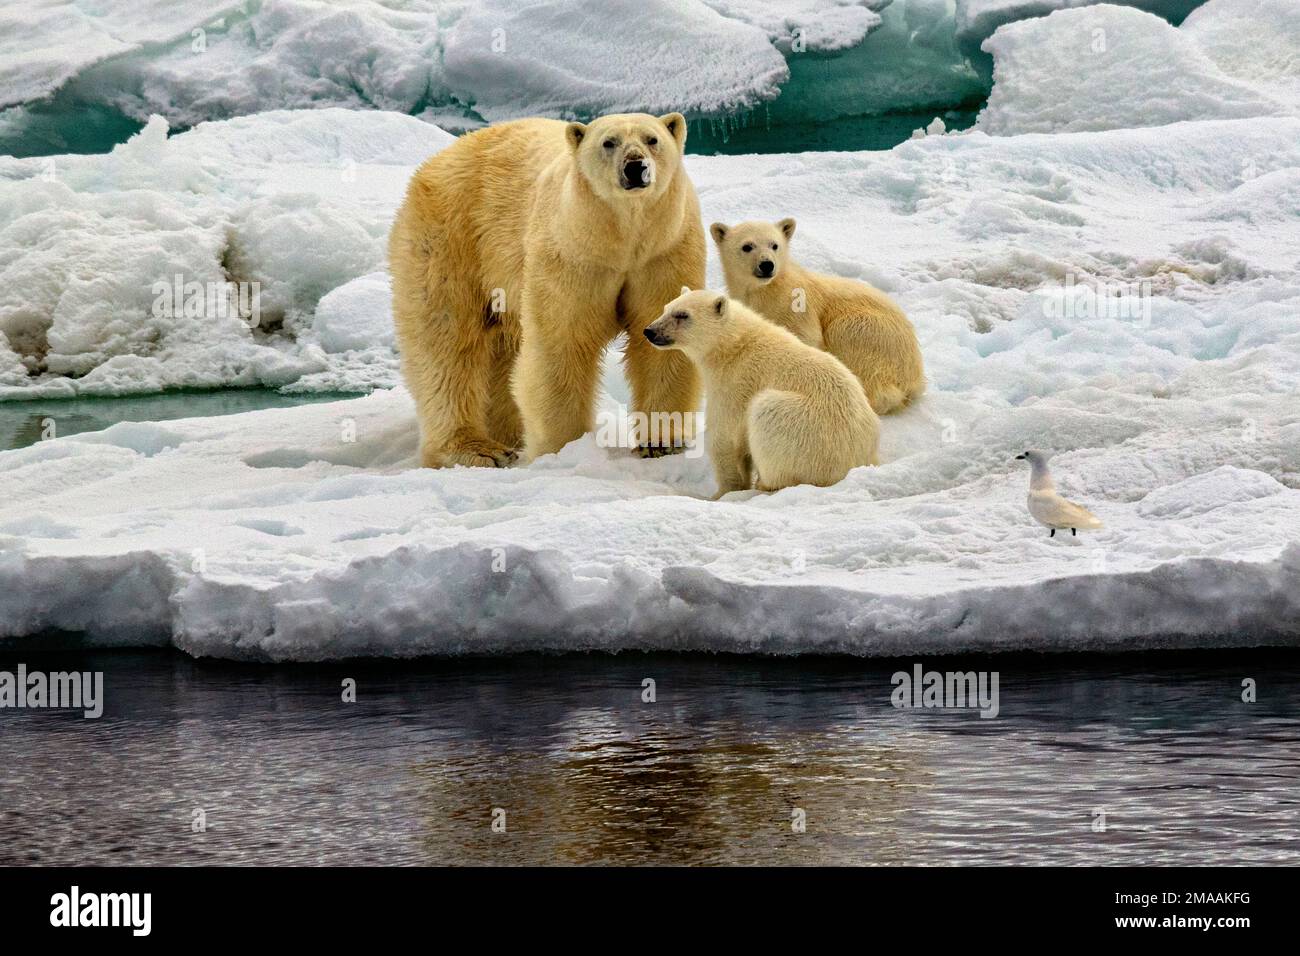 Eisbär Ursus maritimus ours polaires vus à Storoya, Svalbard. Expédition navire de croisière Greg Mortimer dans l'archipel de Svalbard, dans l'Arctique de la Norvège. Storøya Banque D'Images